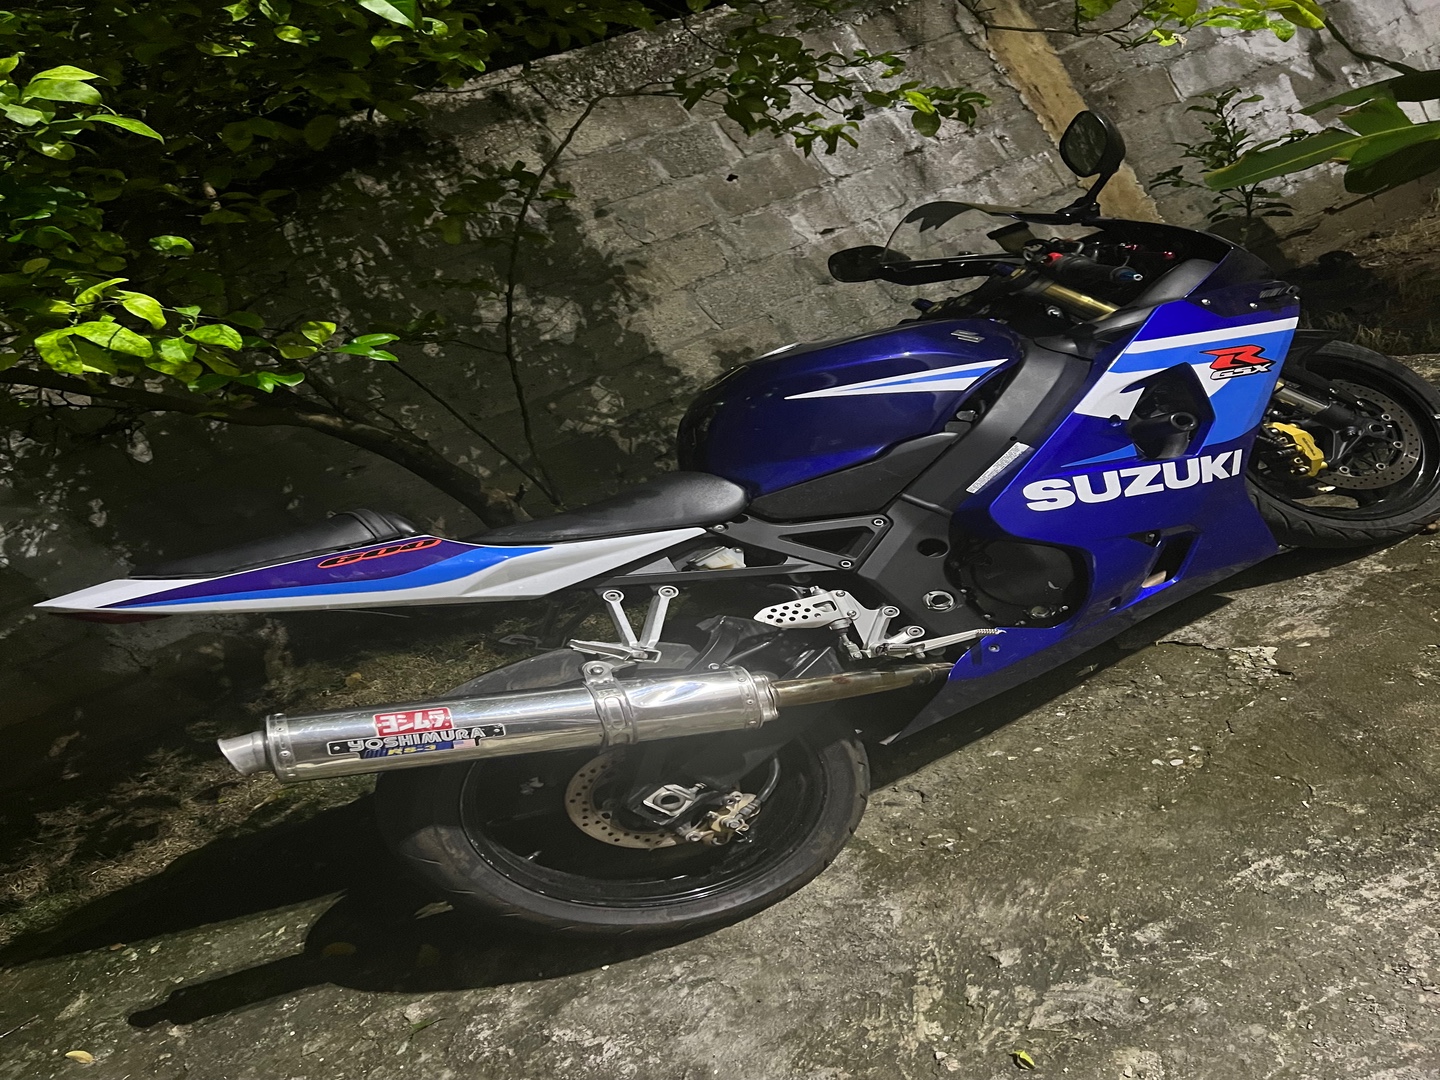 motores y pasolas - Como nuevo. Vendo mi Suzuki GZX 600 
como nuevo!!!!! 
Condiciones excelente!!! 0